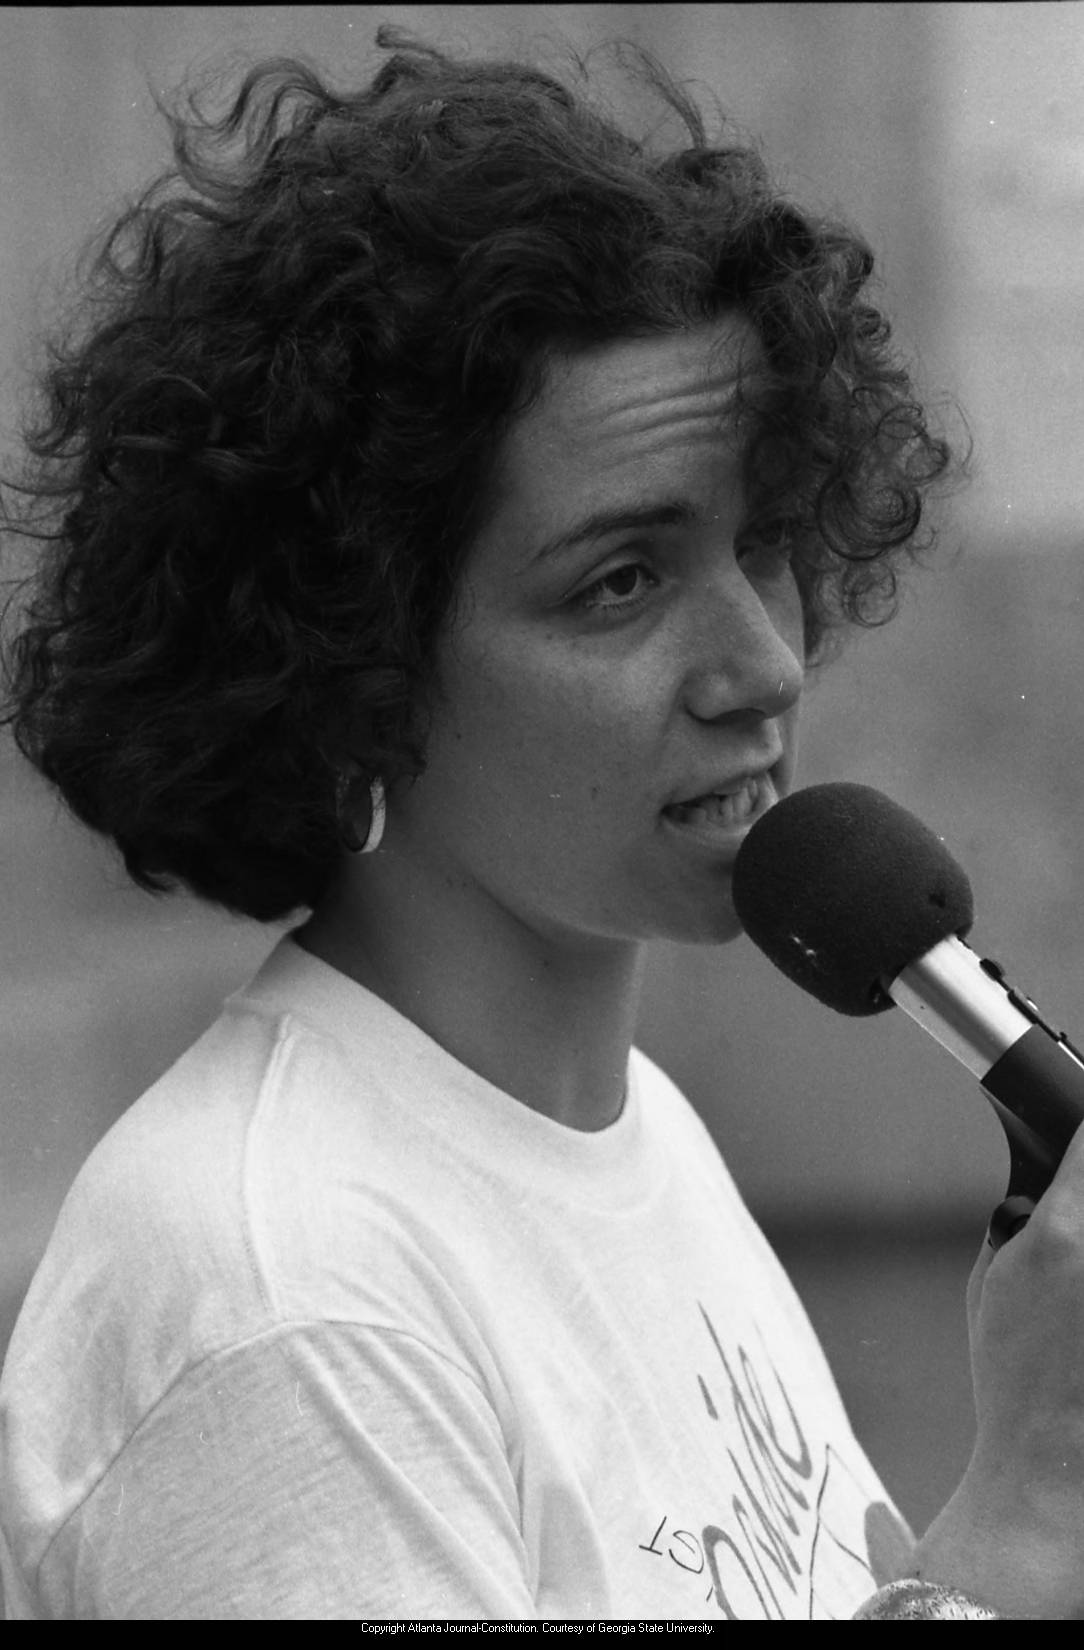 Woman at microphone, 1980 gay pride celebration, Atlanta, Georgia, June 21, 1980.